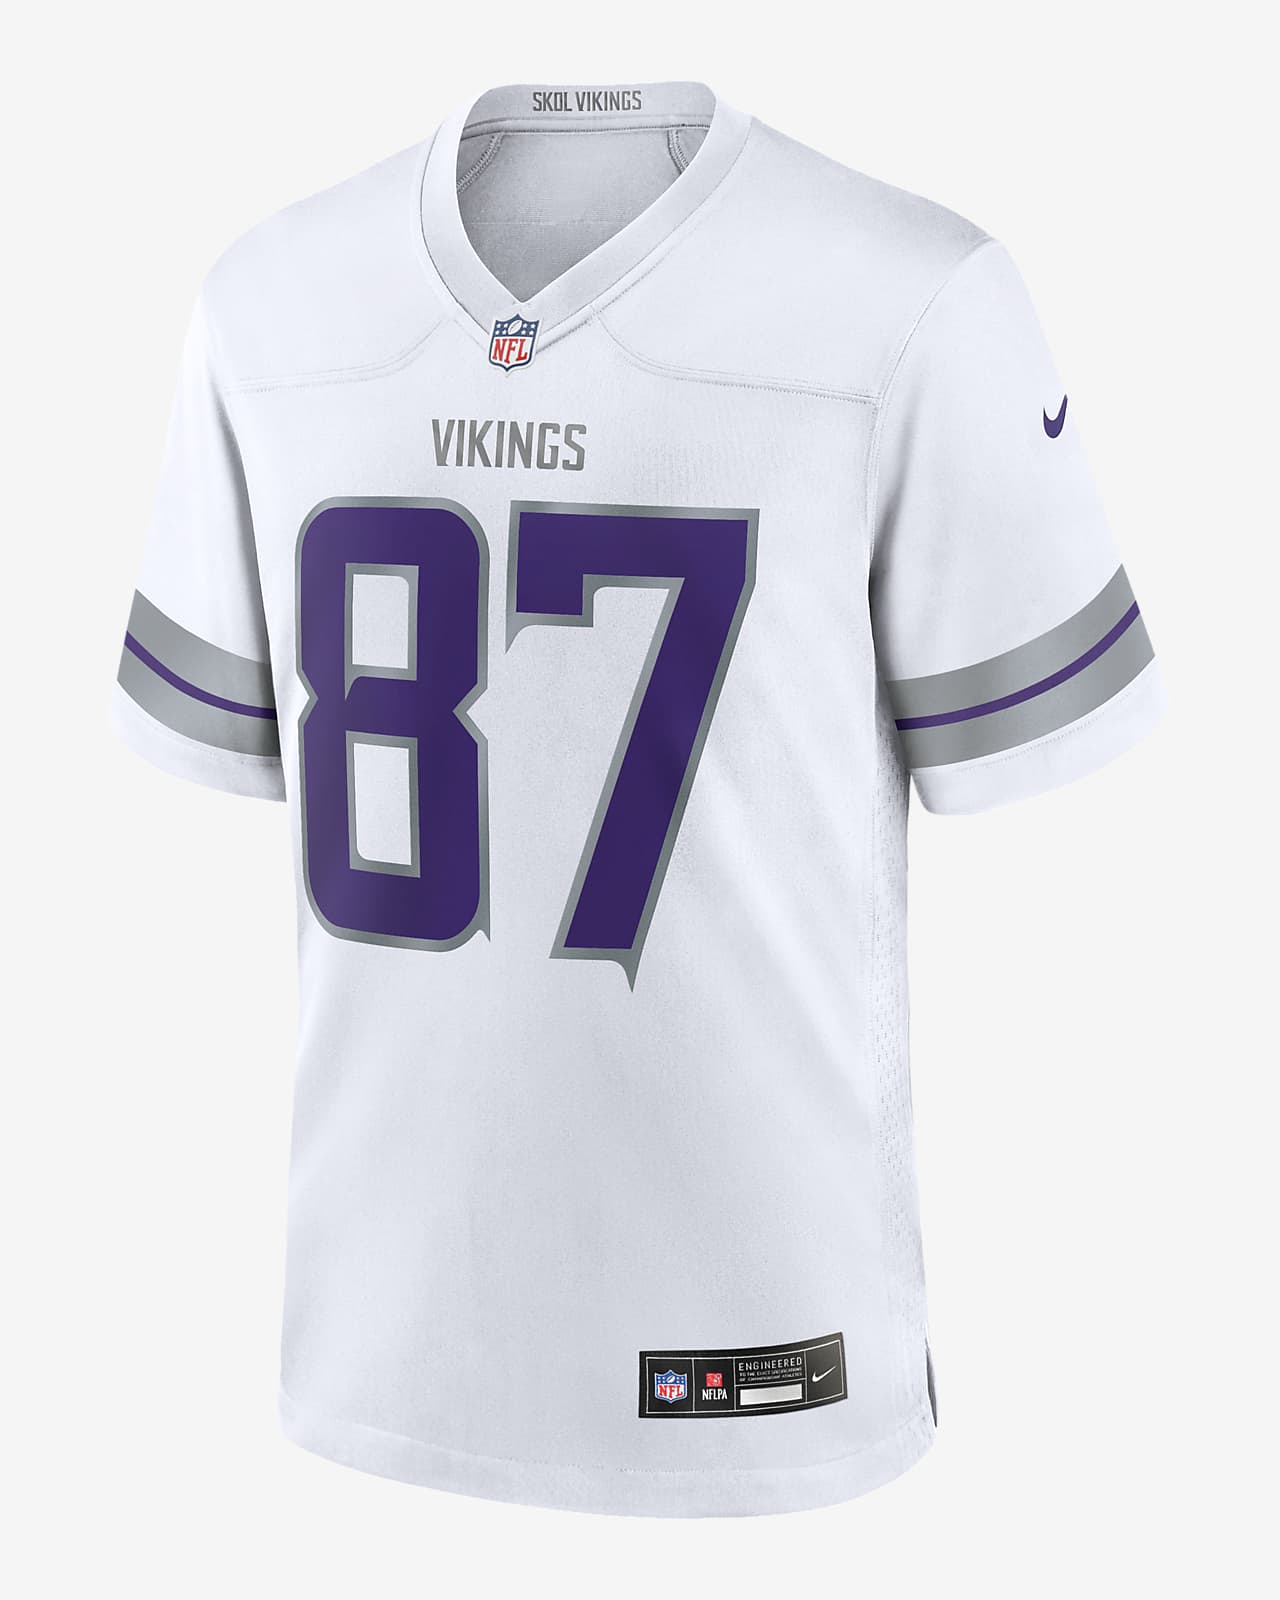 T.J. Jersey Nike de la NFL Game para hombre T.J. Hockenson Minnesota Vikings